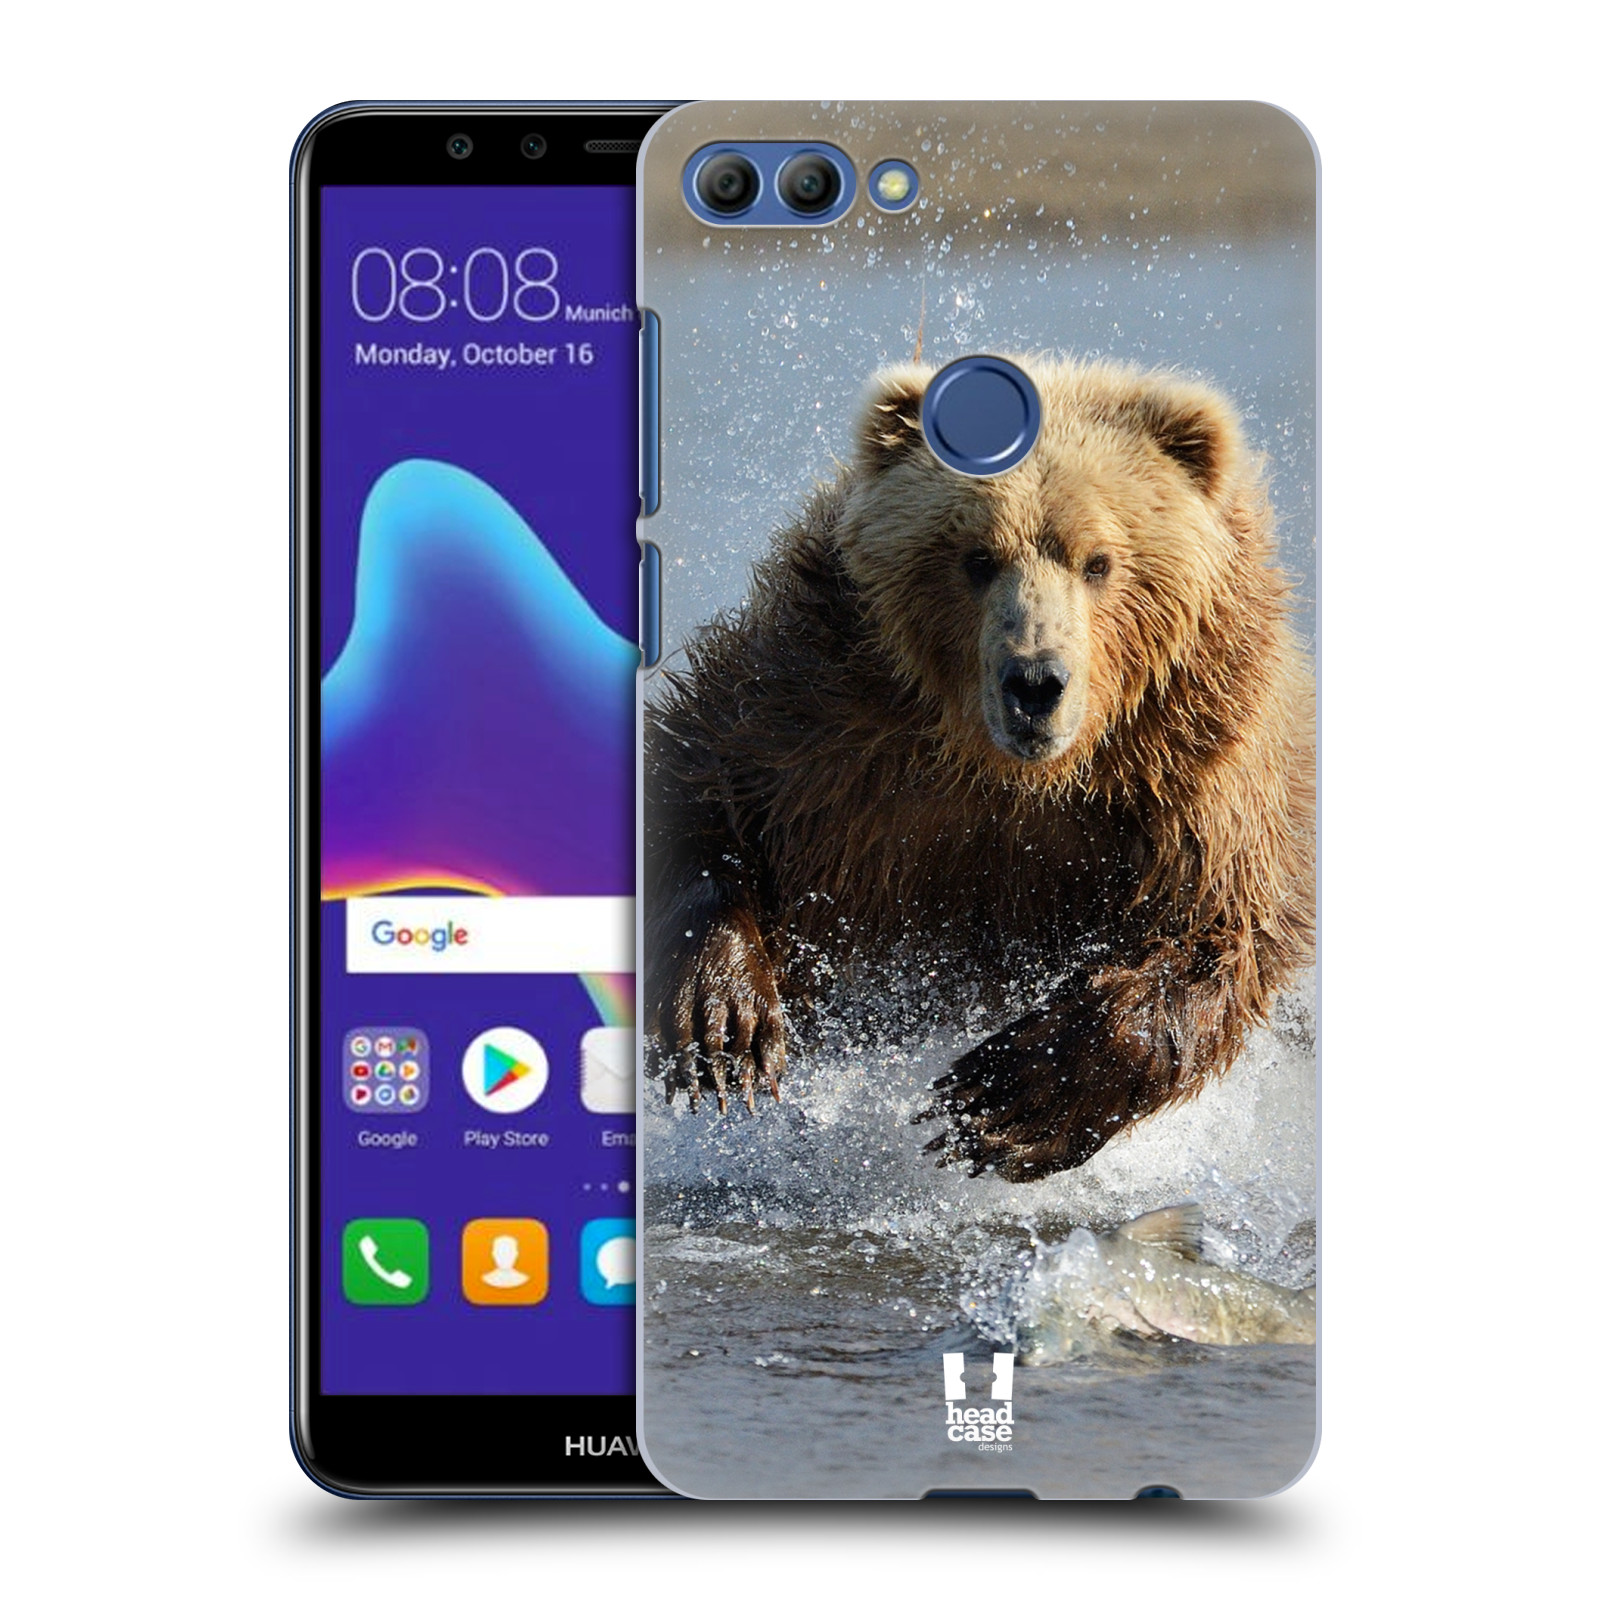 HEAD CASE plastový obal na mobil Huawei Y9 2018 vzor Divočina, Divoký život a zvířata foto MEDVĚD GRIZZLY HŇEDÁ